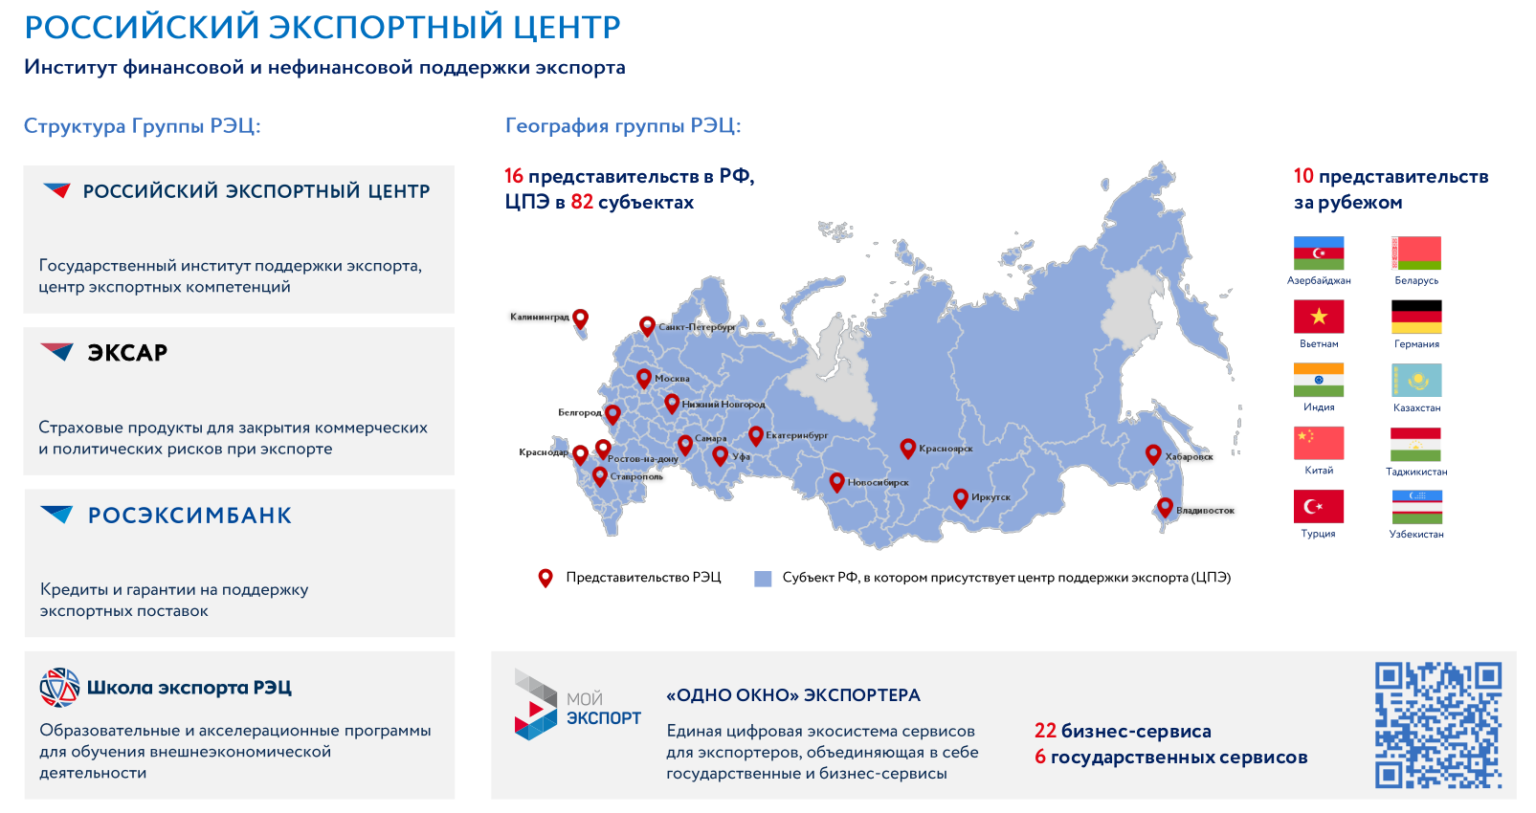 Мрот до 2030 года. Экспортный центр. Российский экспертный центр. Экспорт поддержка РФ. РЭЦ российский экспортный центр.